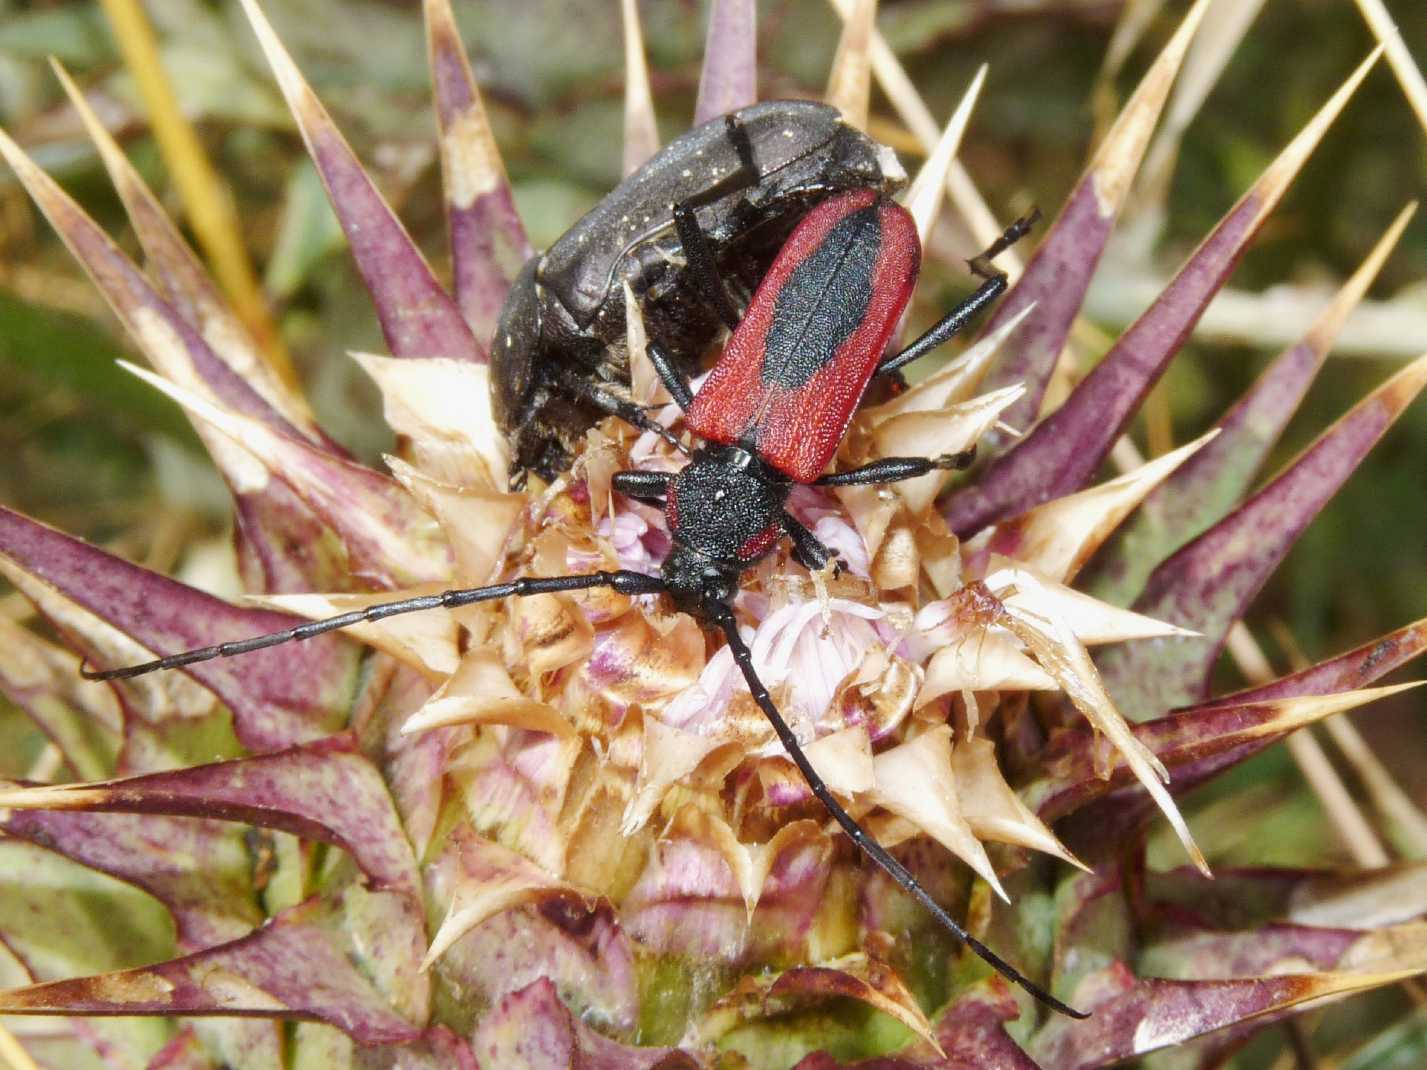 Purpuricenus  kaehleri (Cerambycidae)